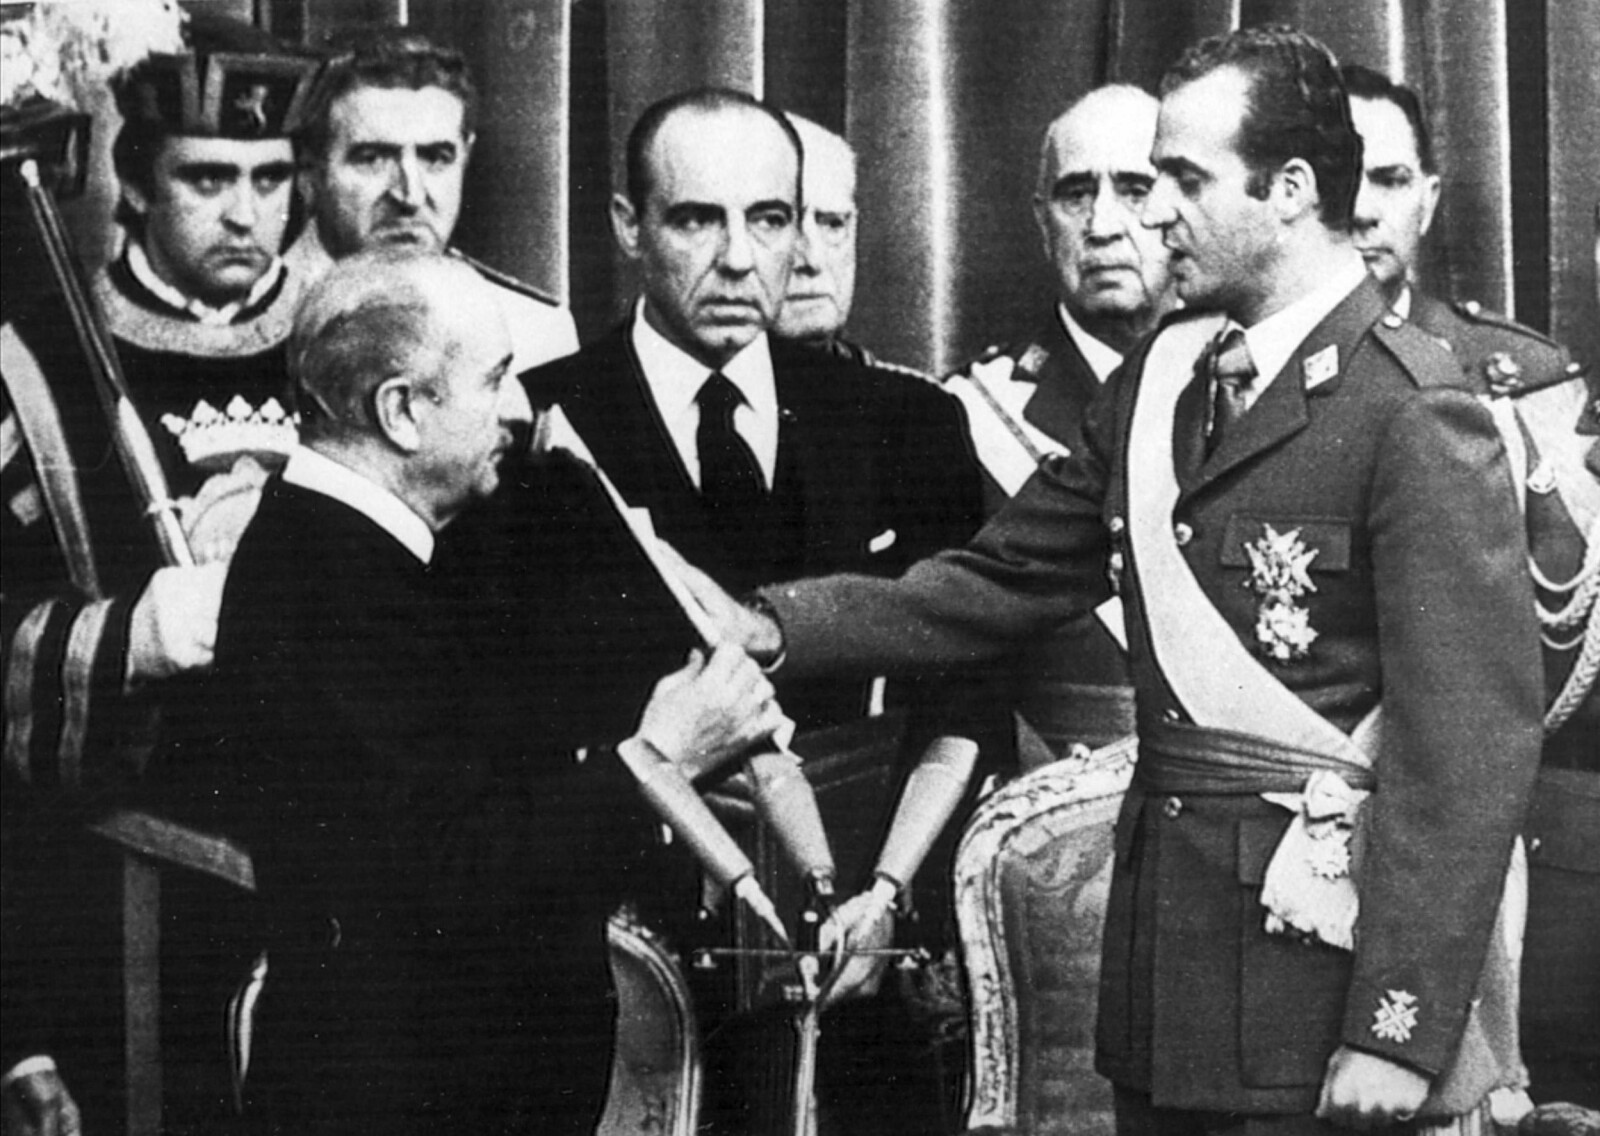 <b>GA FRA SEG MAKTEN:</b> I 1975 døde Franco. Han hadde styrt landet siden slutten av 1930-tallet. Før sin død bestemte han at Spania skulle bli et monarki, og han utpekte grev Juan Carlos av Bourbon som ny konge.